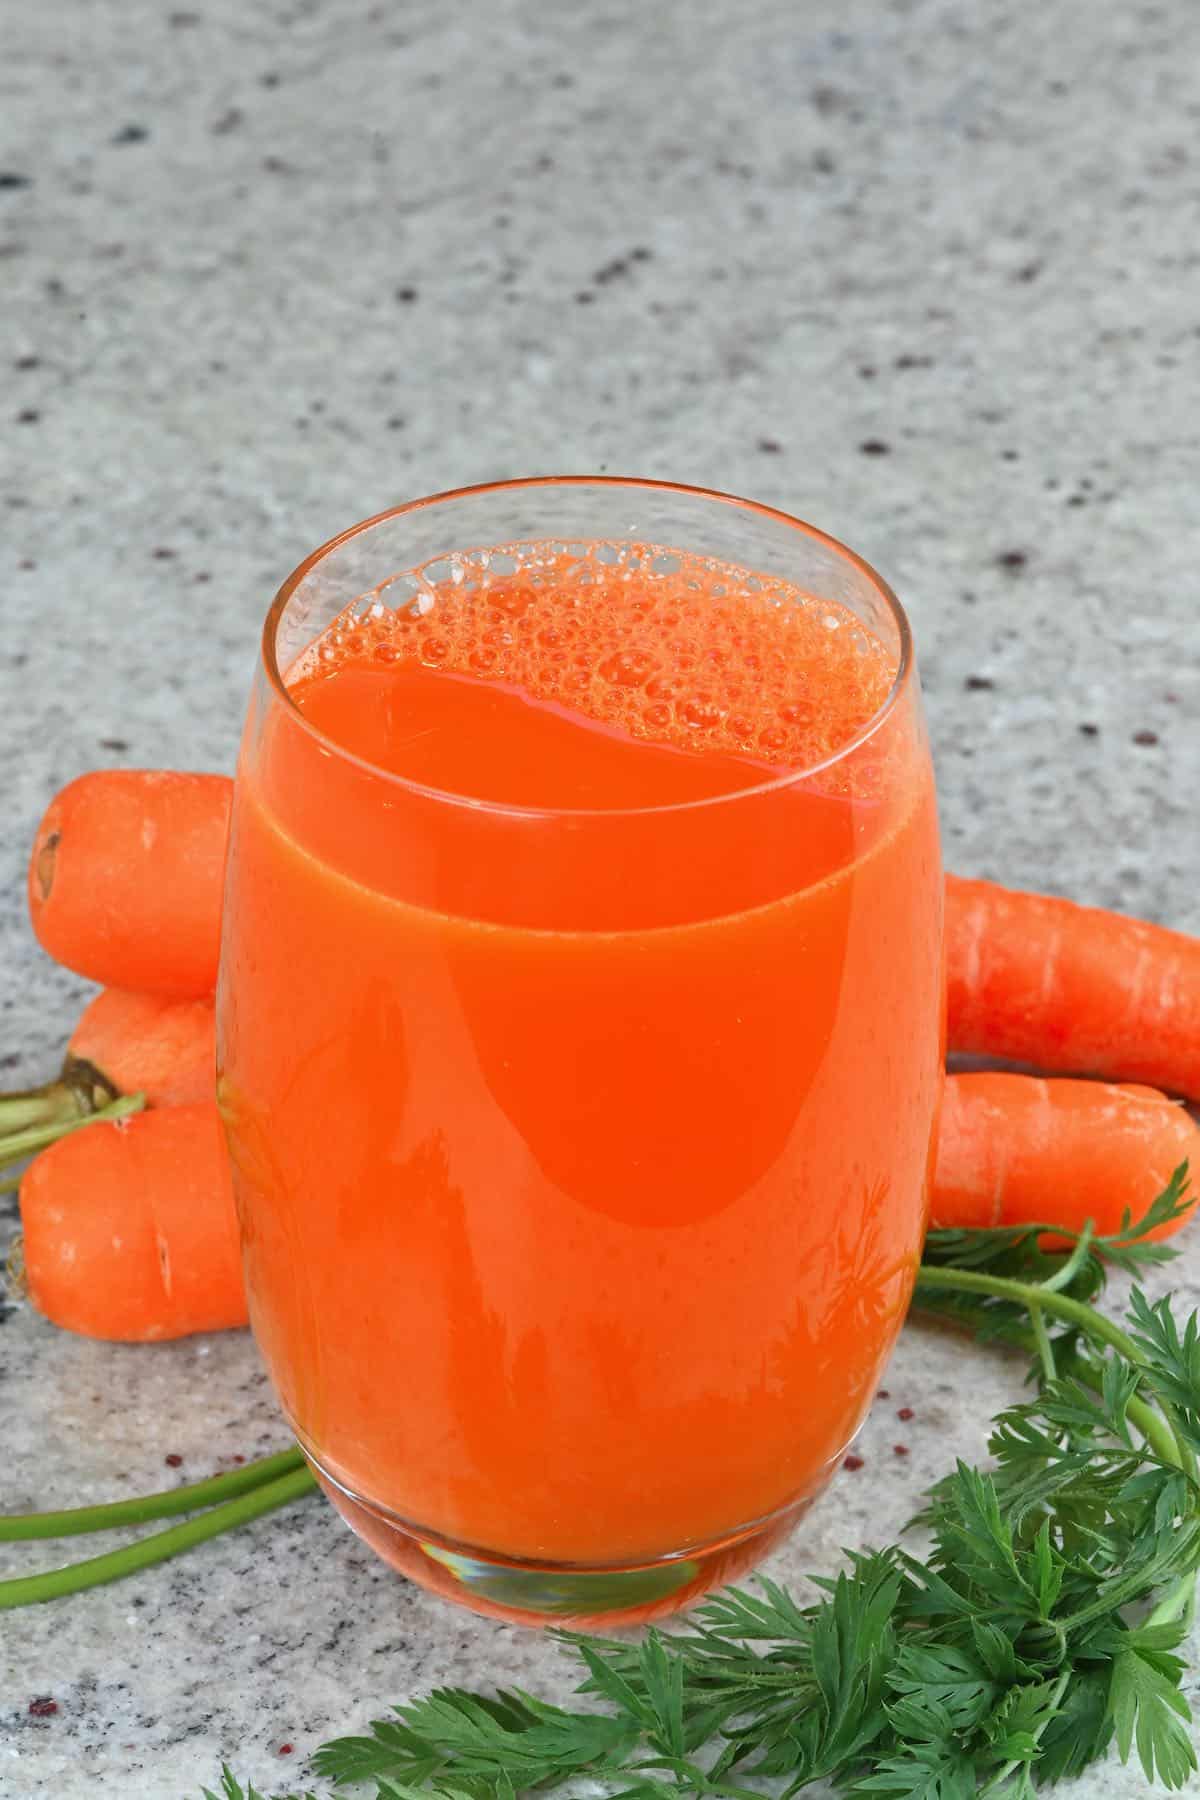 Simple Make Carrot Juice Step By Step In Baubau City